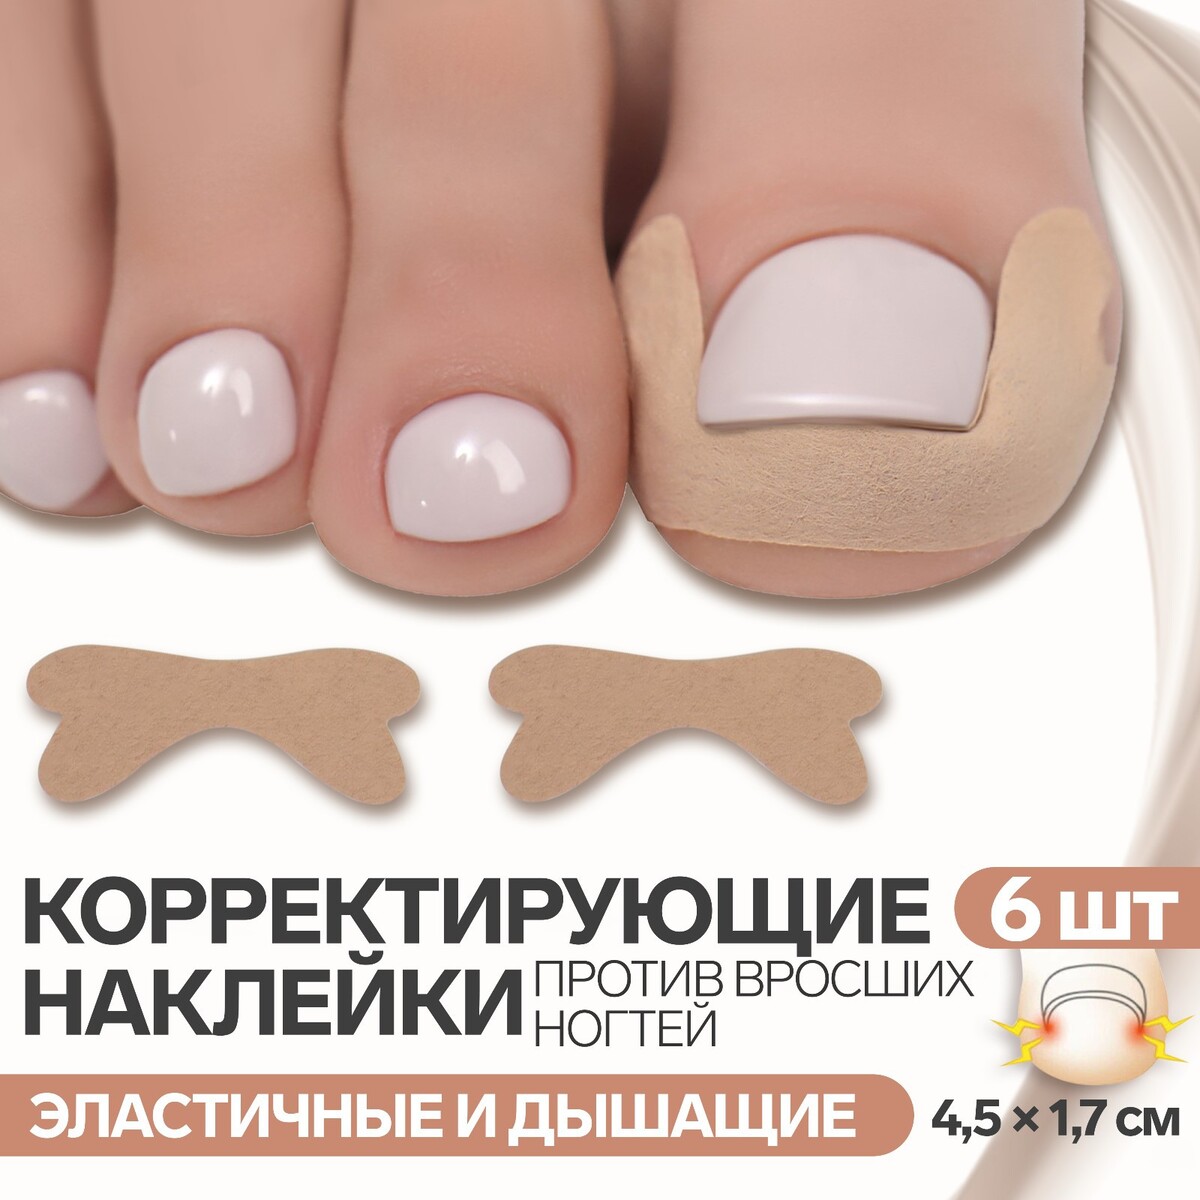 Наклейки против вросших ногтей, 6 шт, 4,5 × 1,7 см, цвет бежевый сибиряки против сс